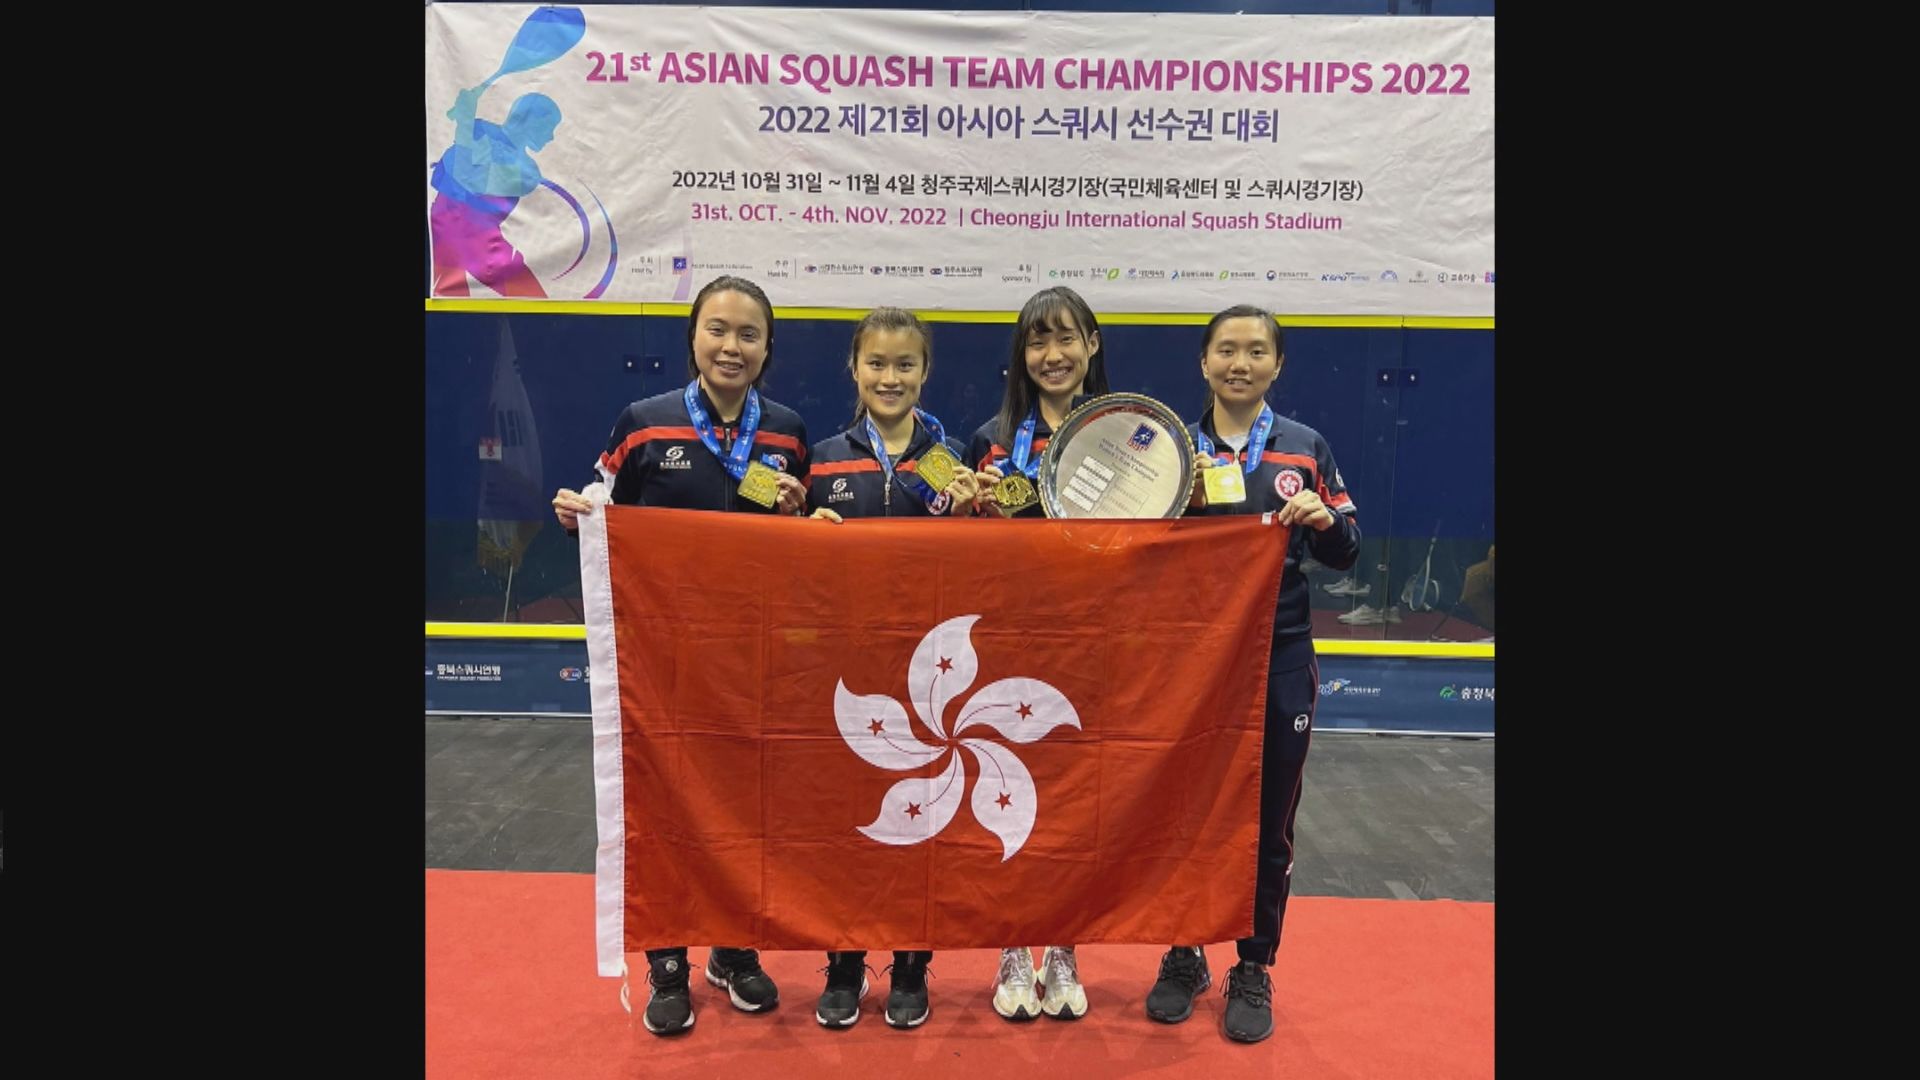 香港女子隊挫大馬重奪亞洲壁球團賽冠軍